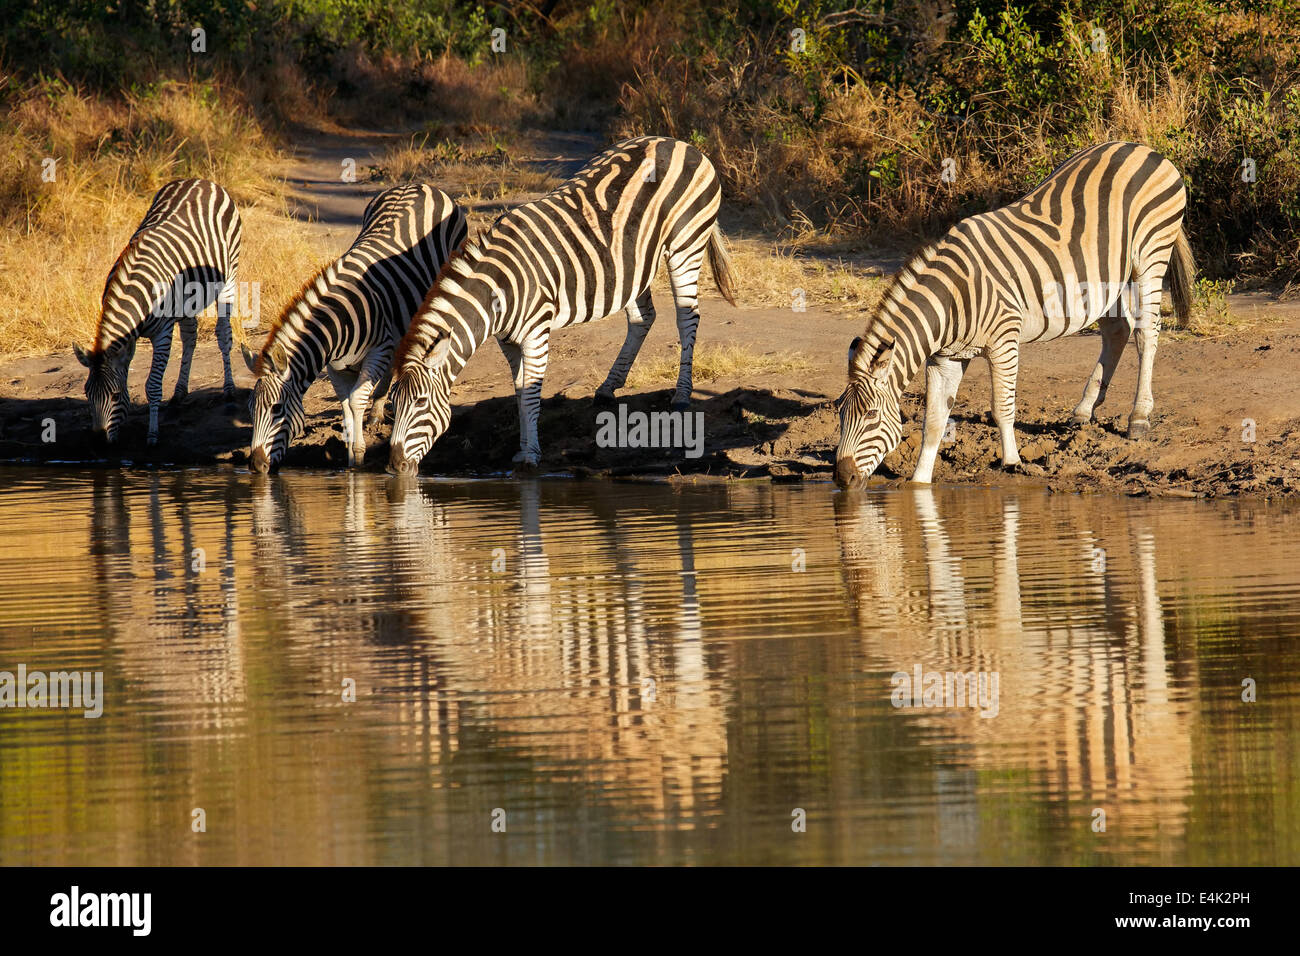 Le pianure zebre (Equus burchelli) acqua potabile, Sabie-Sand riserva naturale, Sud Africa Foto Stock